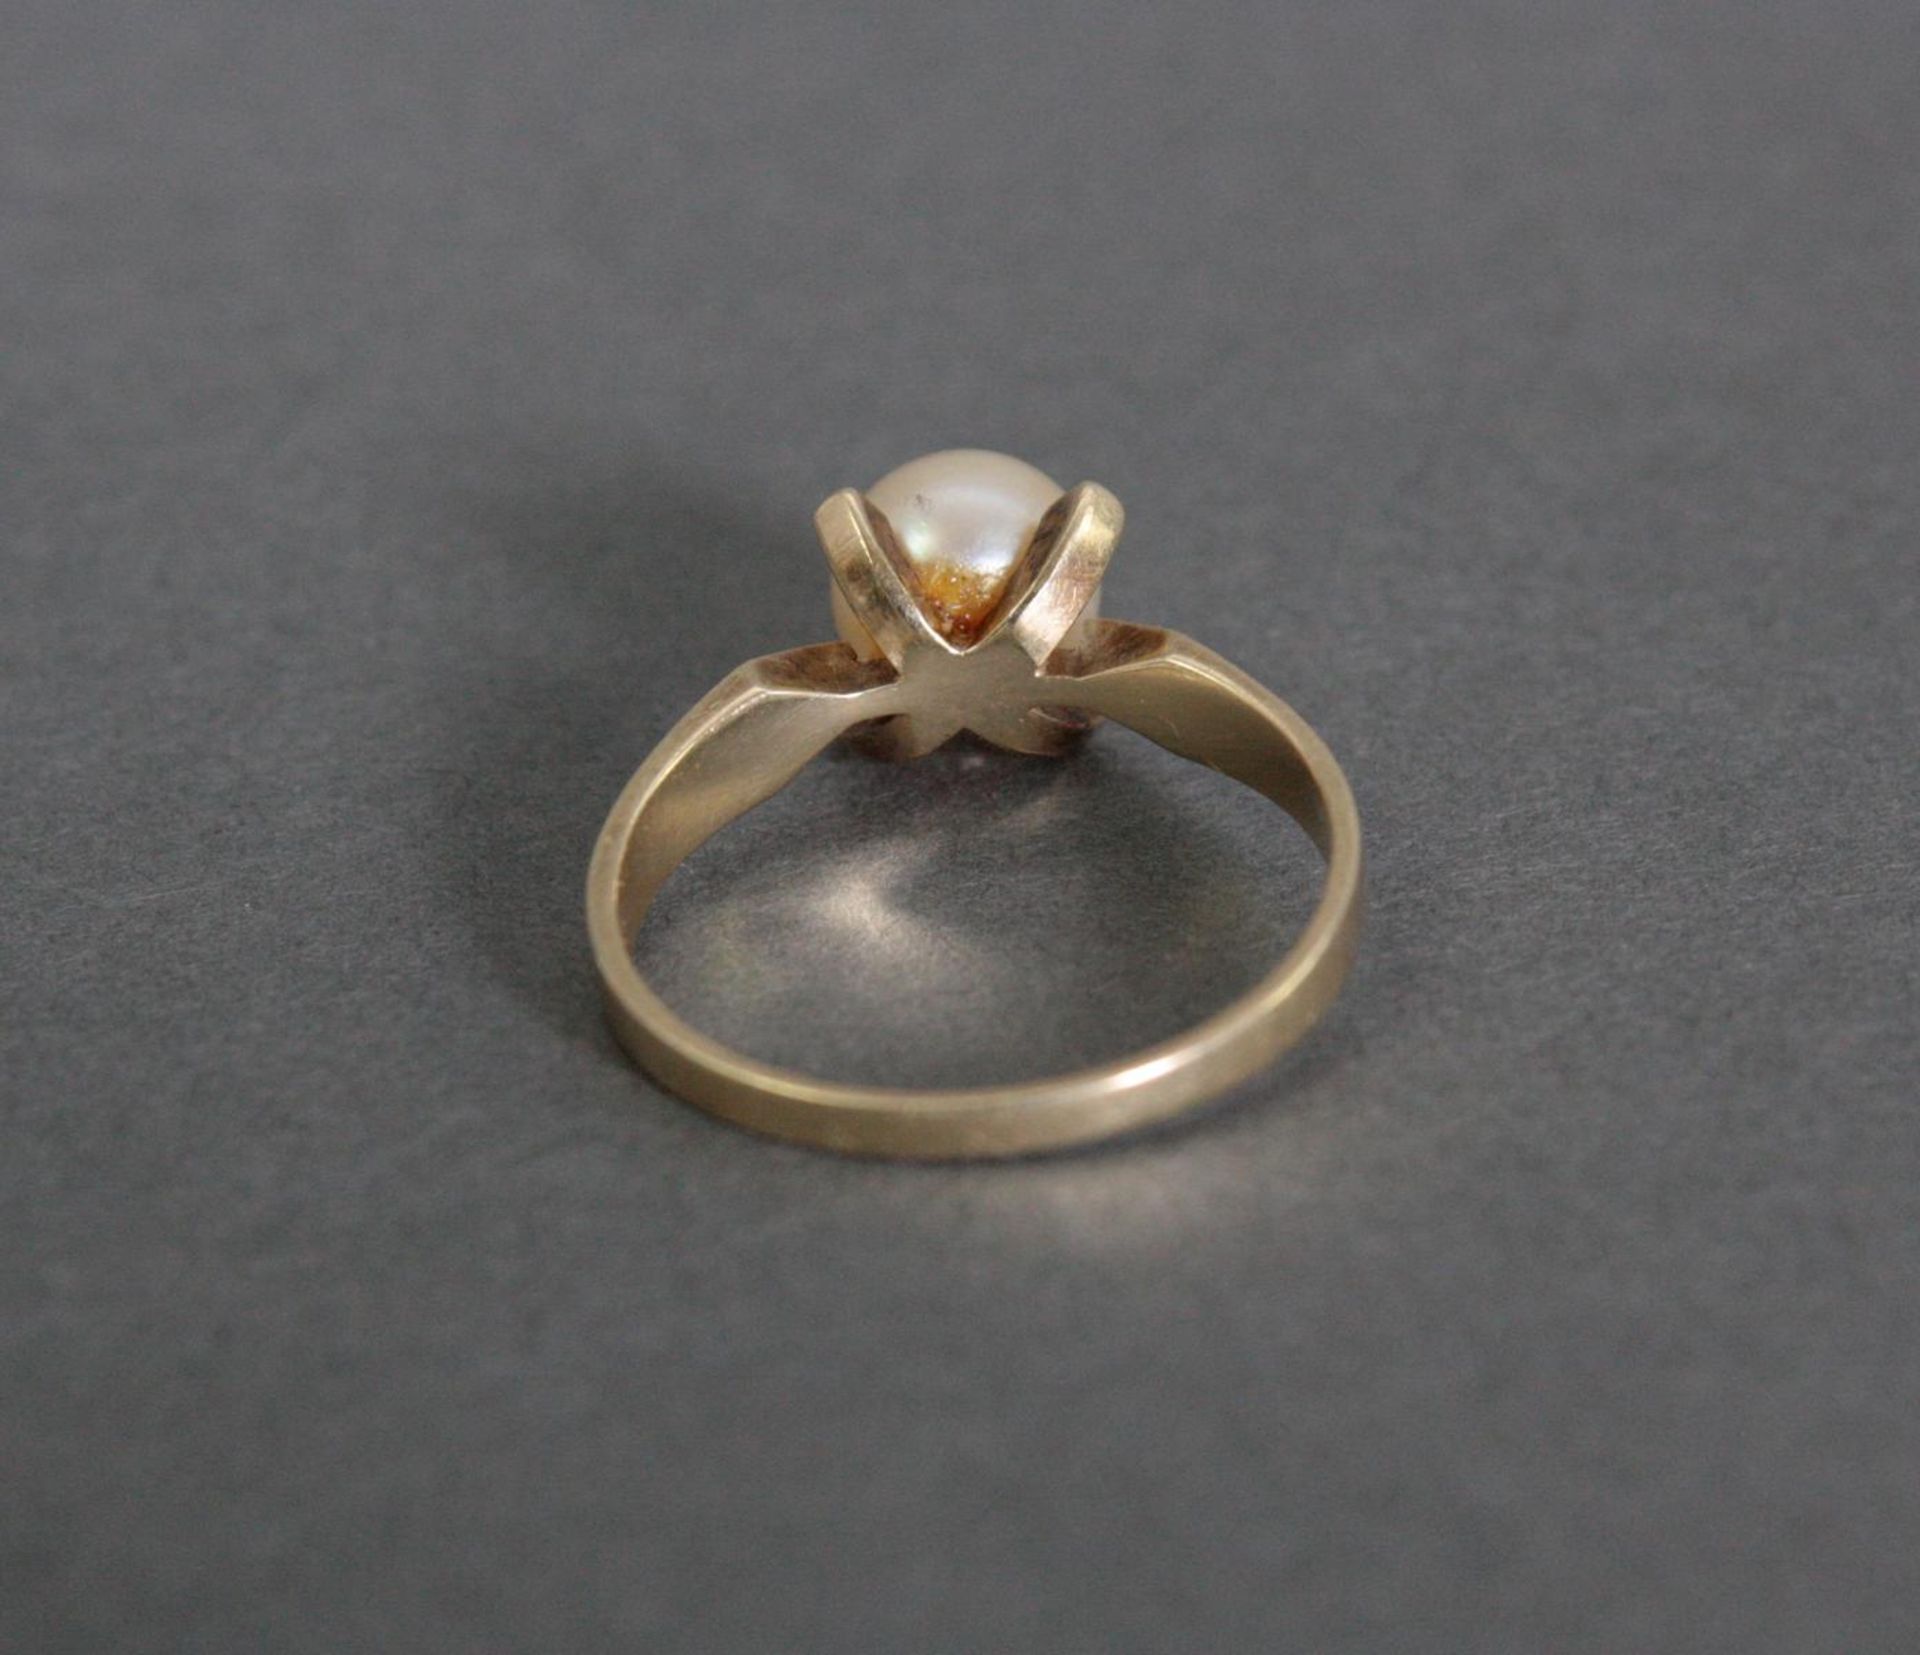 Damenring mit Perle, 14 Karat Gelbgold1 Perle Durchmesser 7,5 mm, Ringgröße 58, 3,4 g. - Image 3 of 3